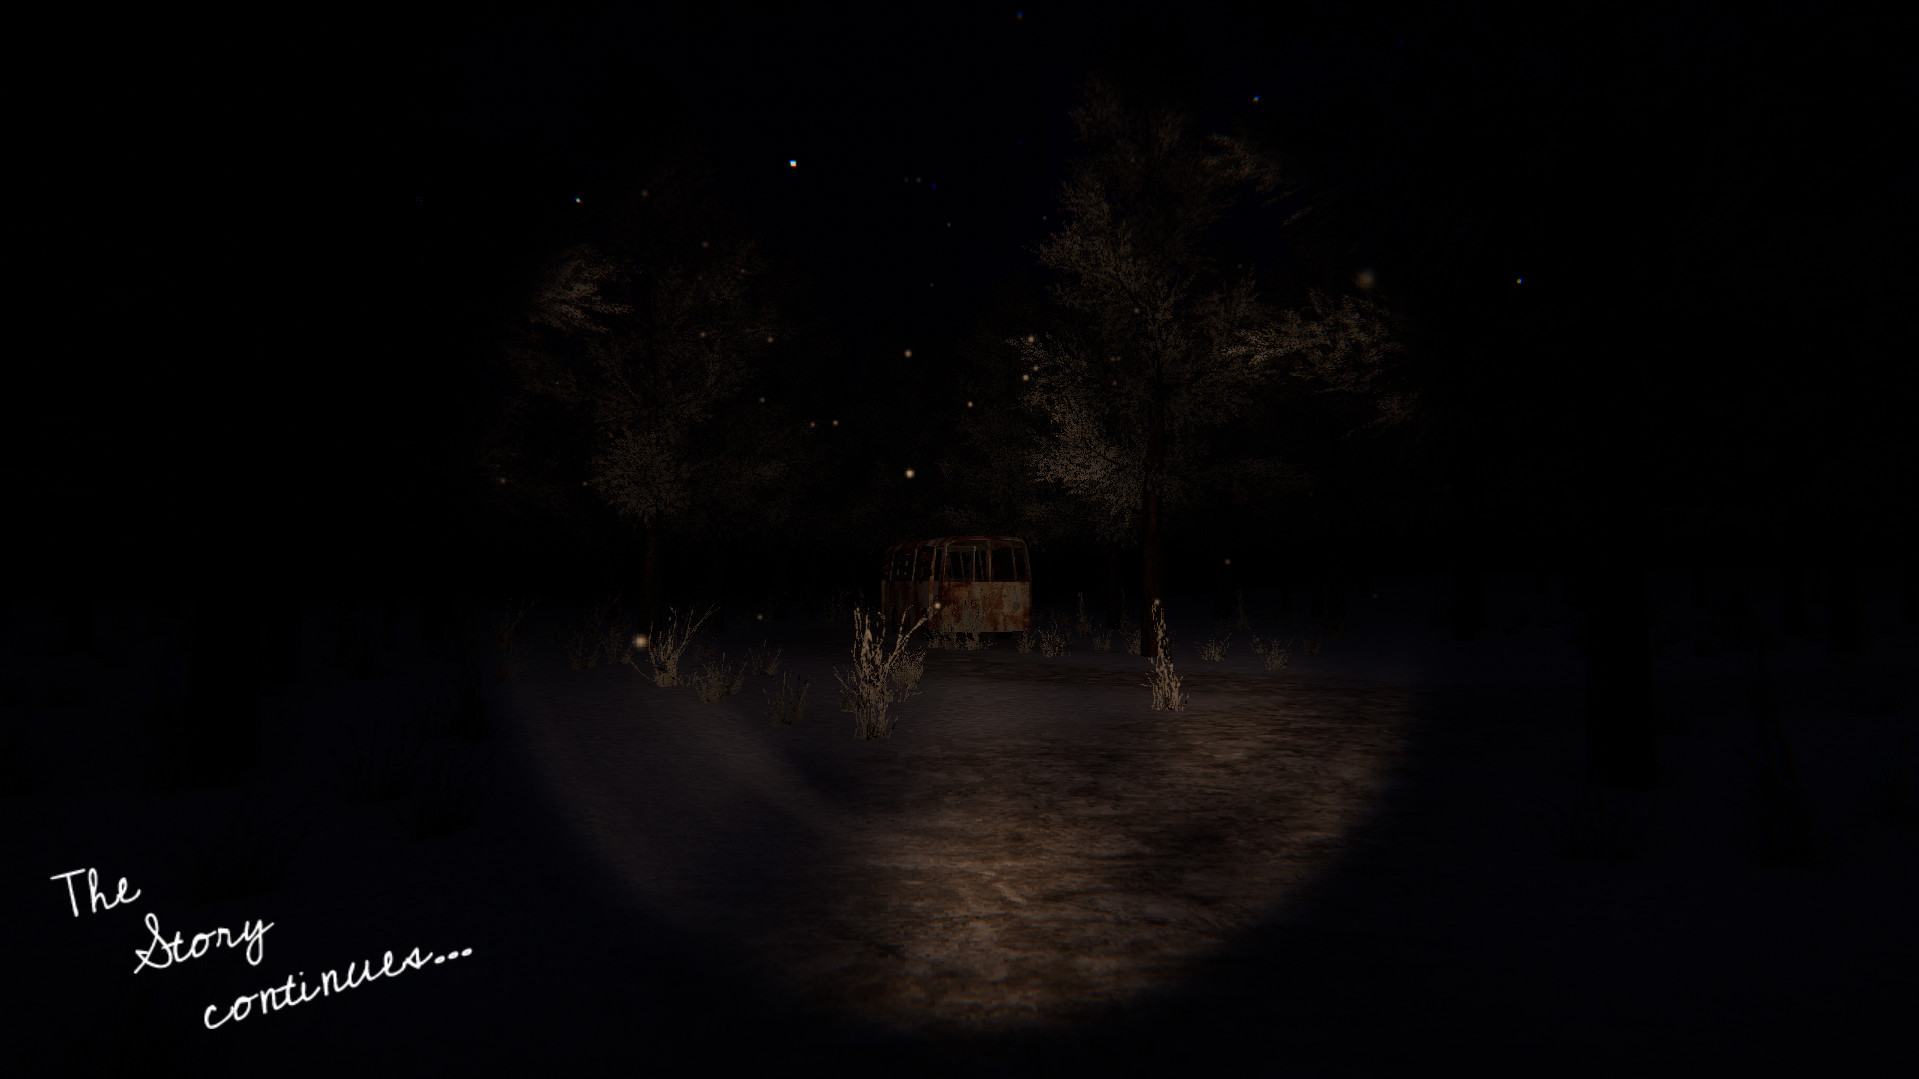 Siren Head Horror Bunker VR on Steam